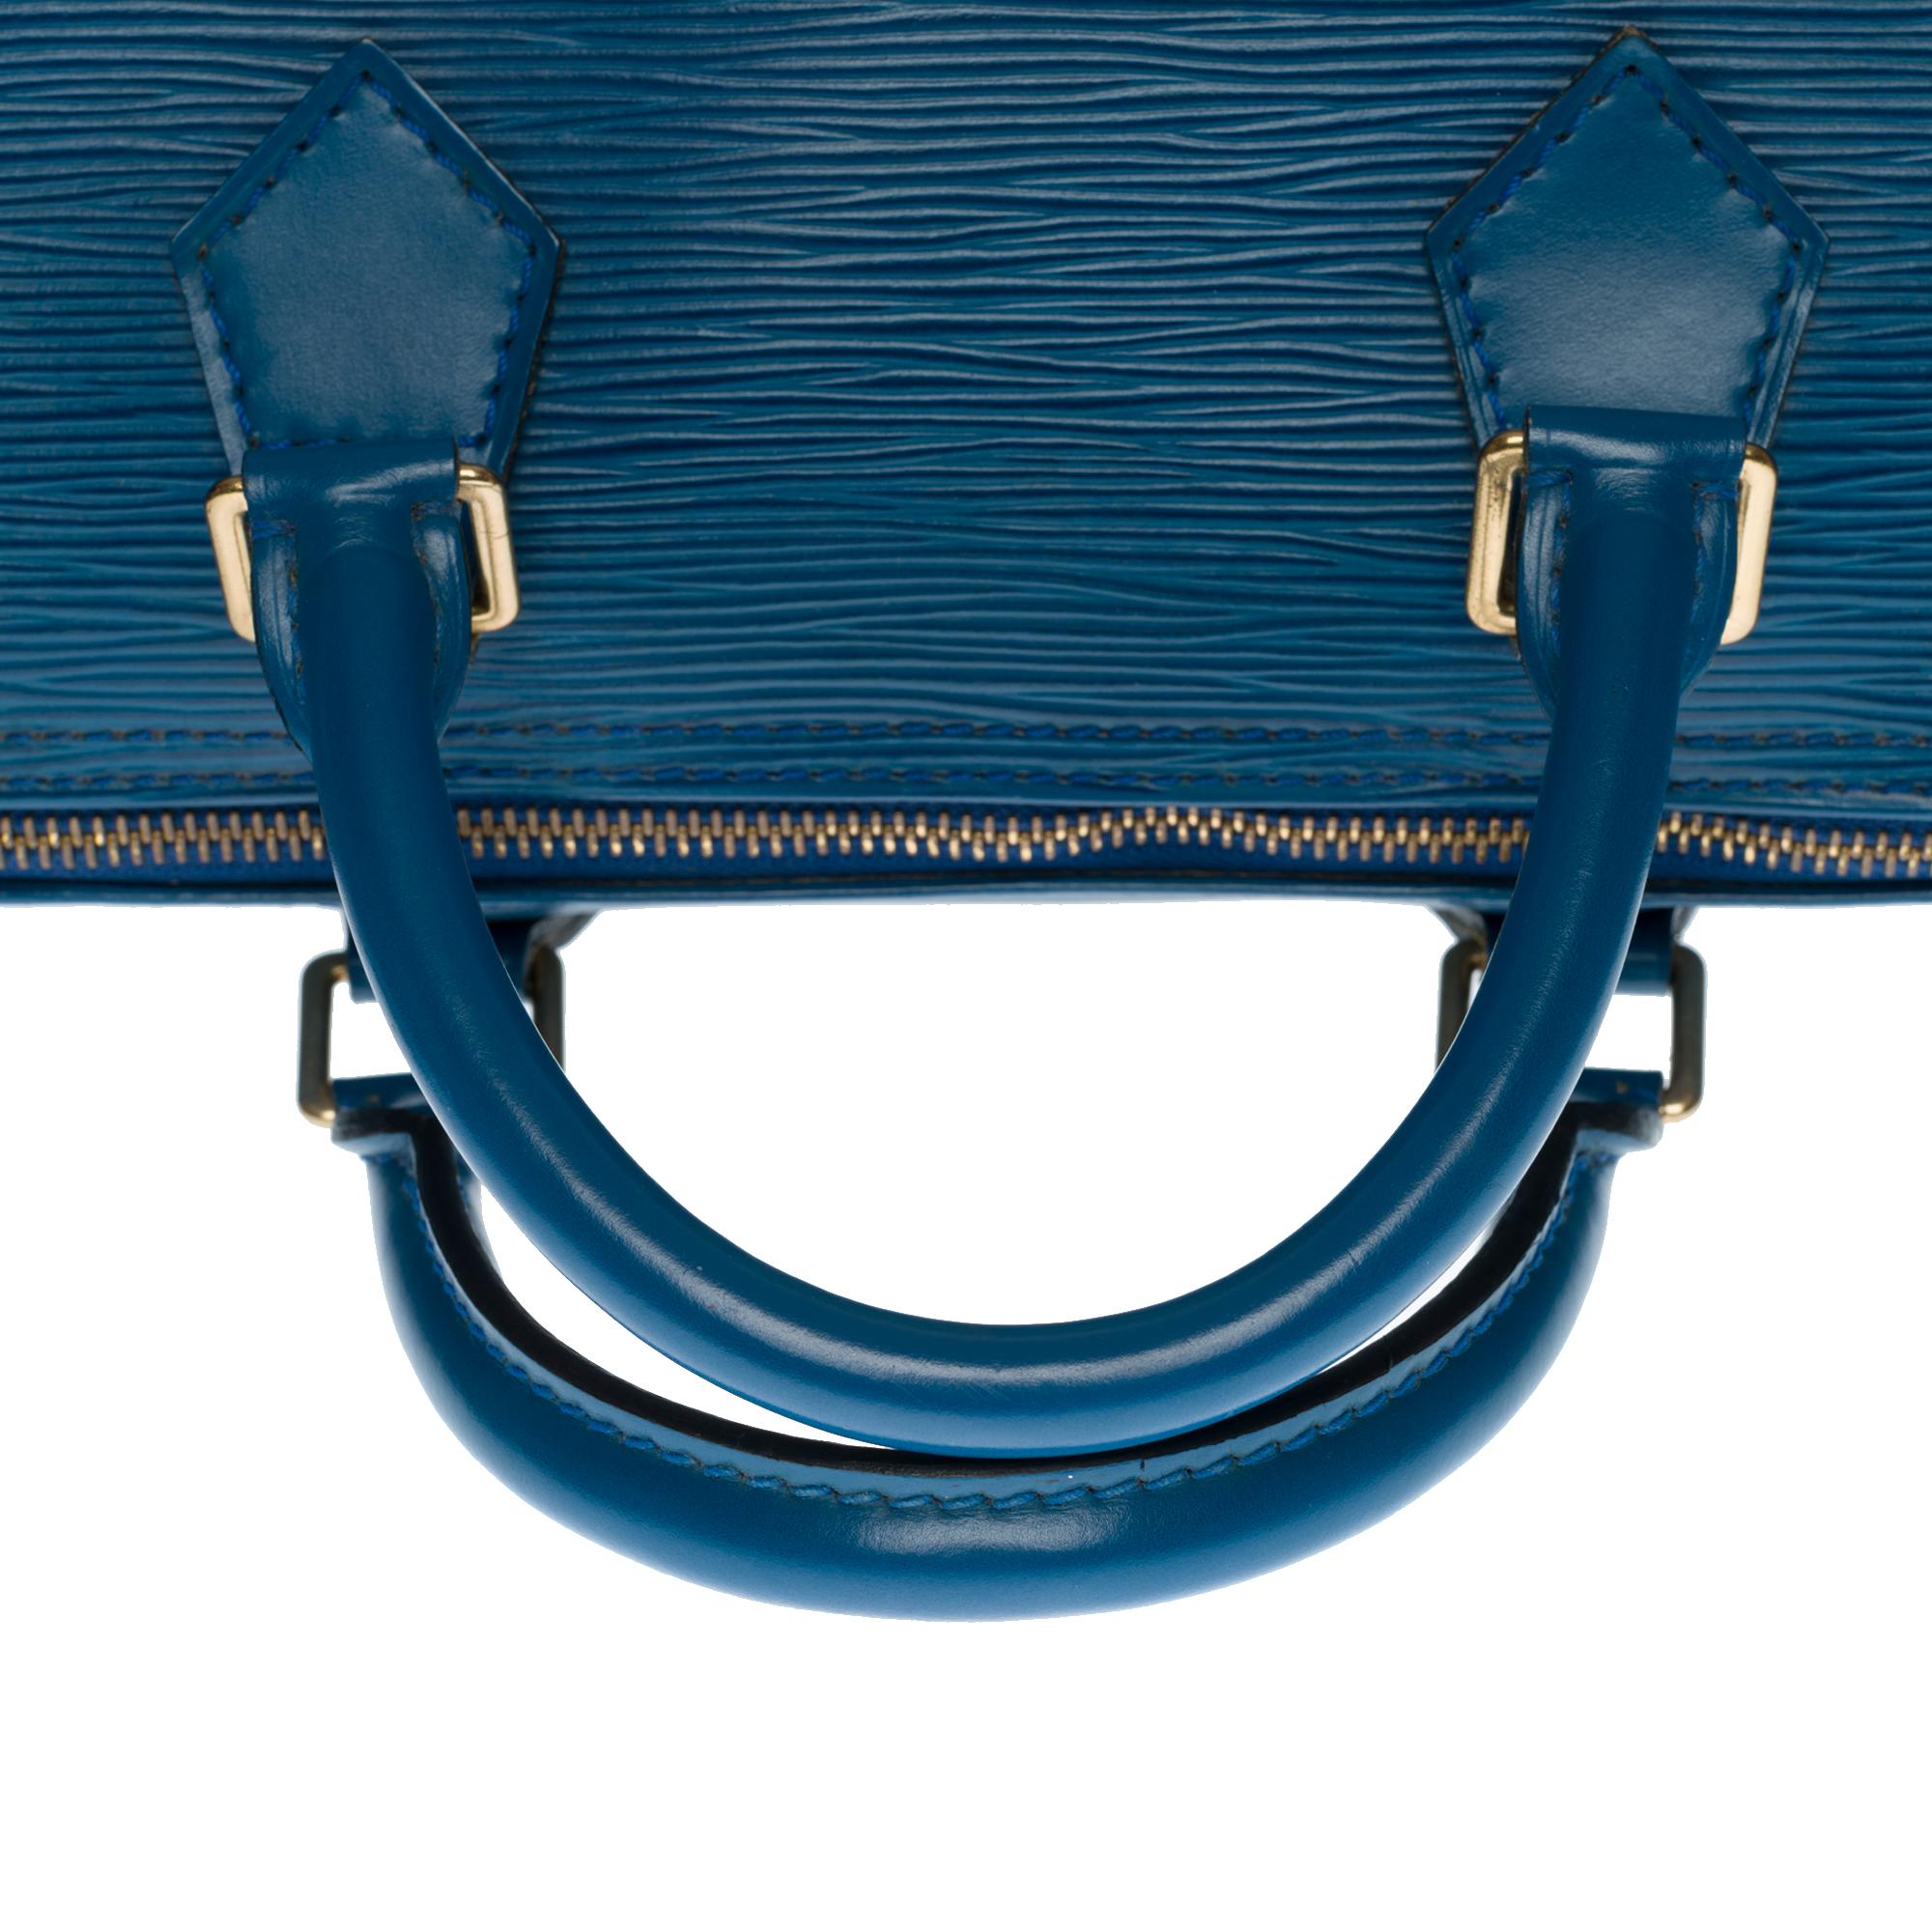 Louis Vuitton Speedy 30 Handtasche aus blauem kobaltfarbenem Pi-Leder und goldenen Beschlägen 3